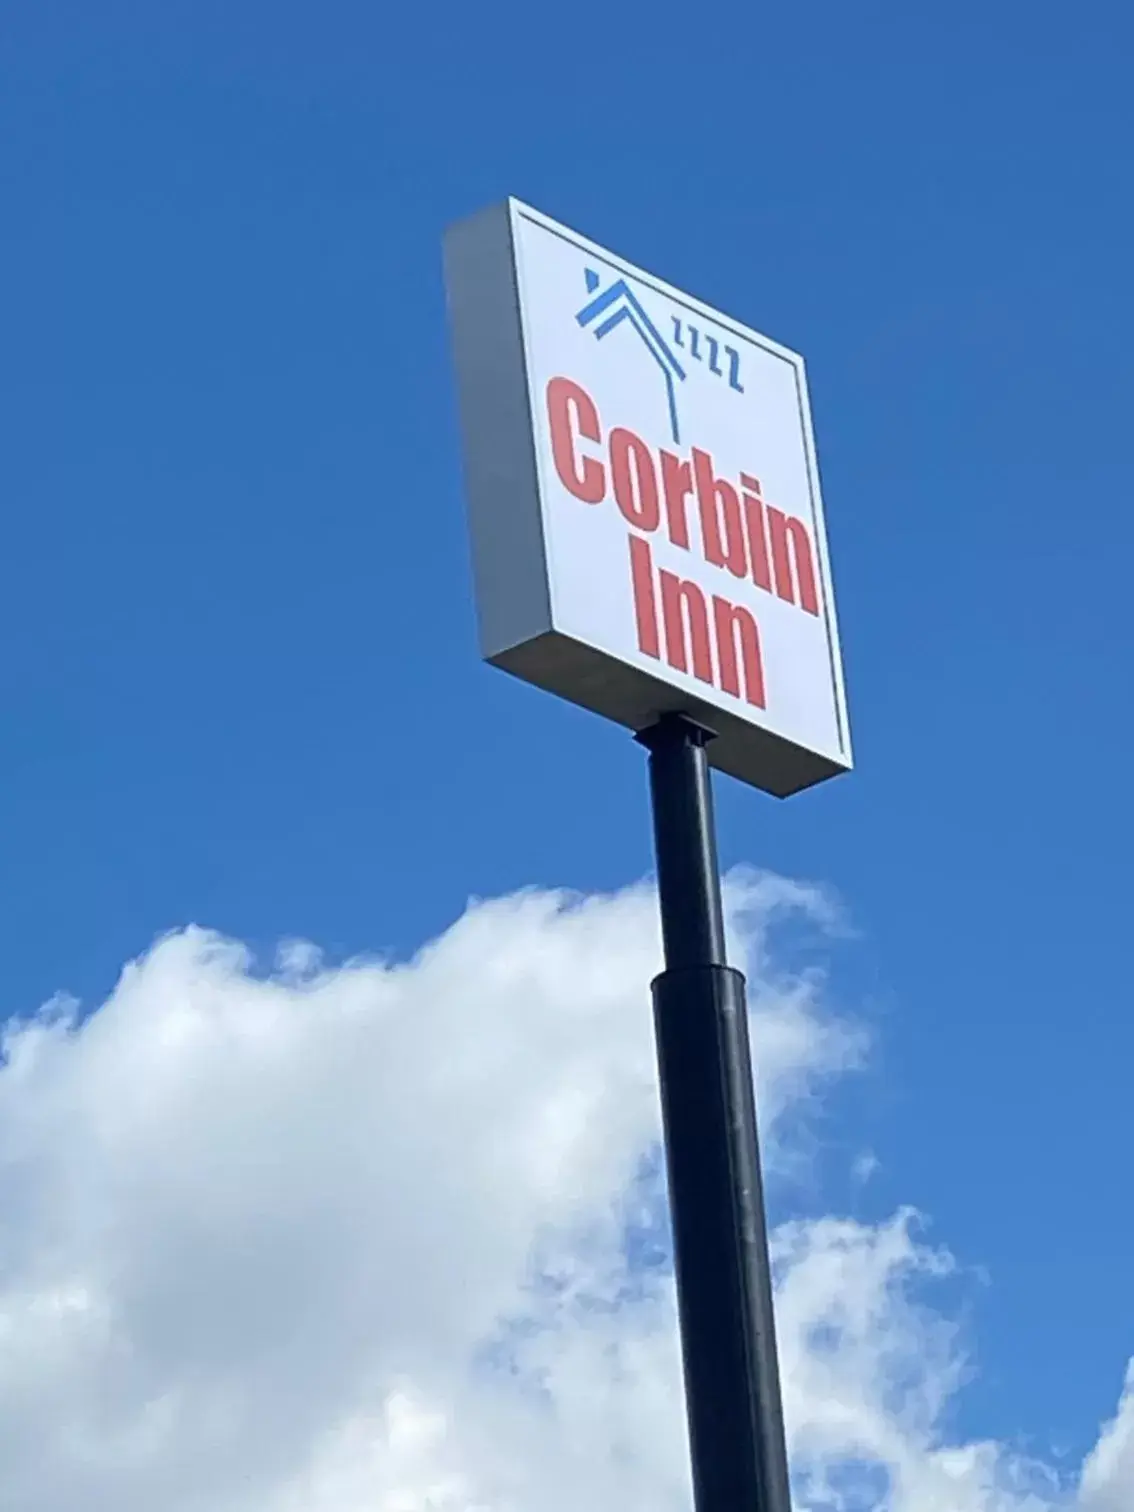 Property logo or sign in Corbin Inn